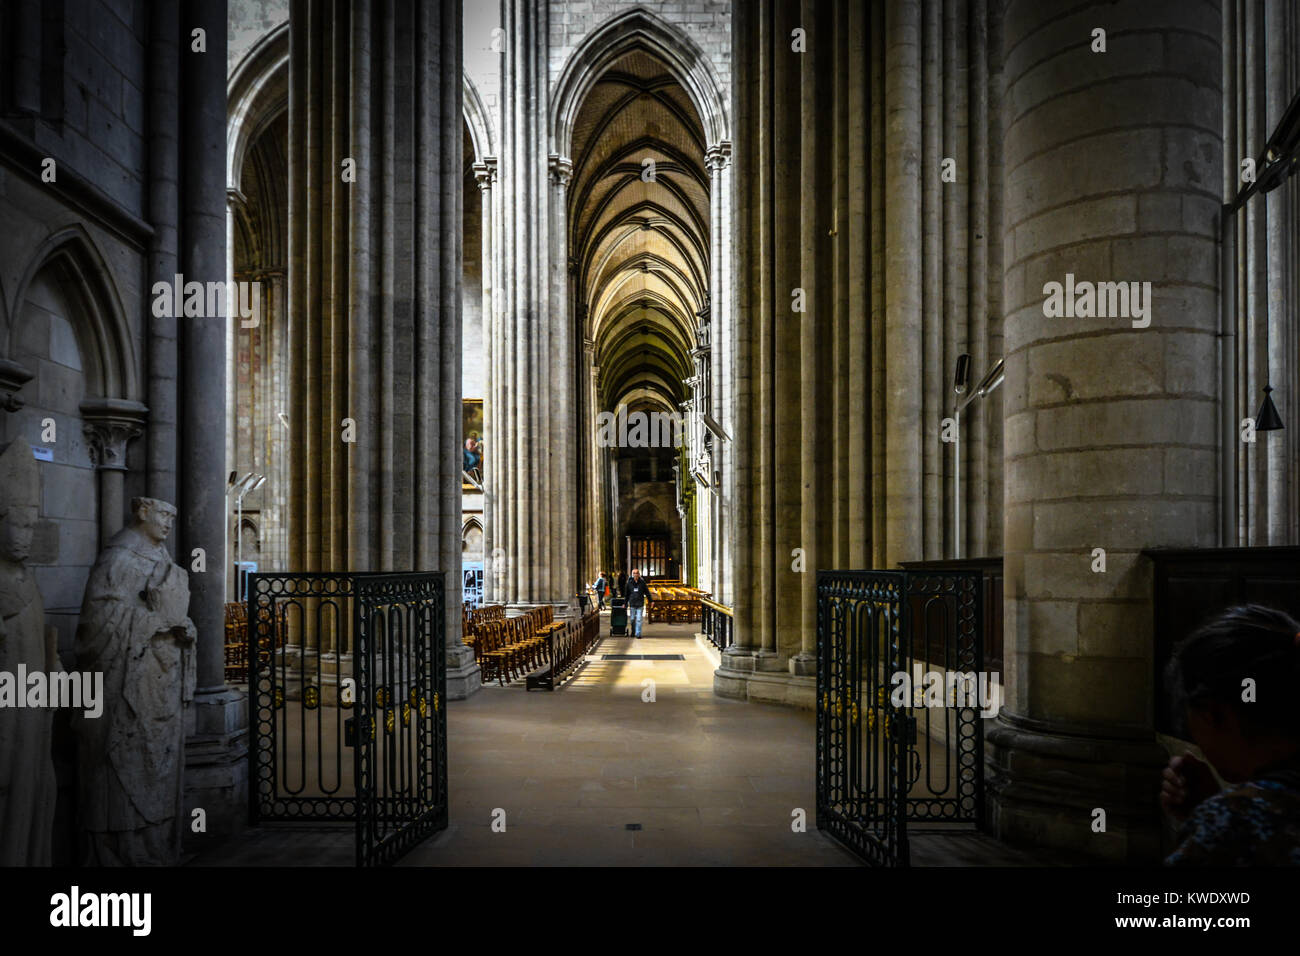 Die gotische Interieur der historischen Kathedrale von Rouen in der Normandie Frankreich mit dramatischen Licht- und gewölbte Decke Stockfoto